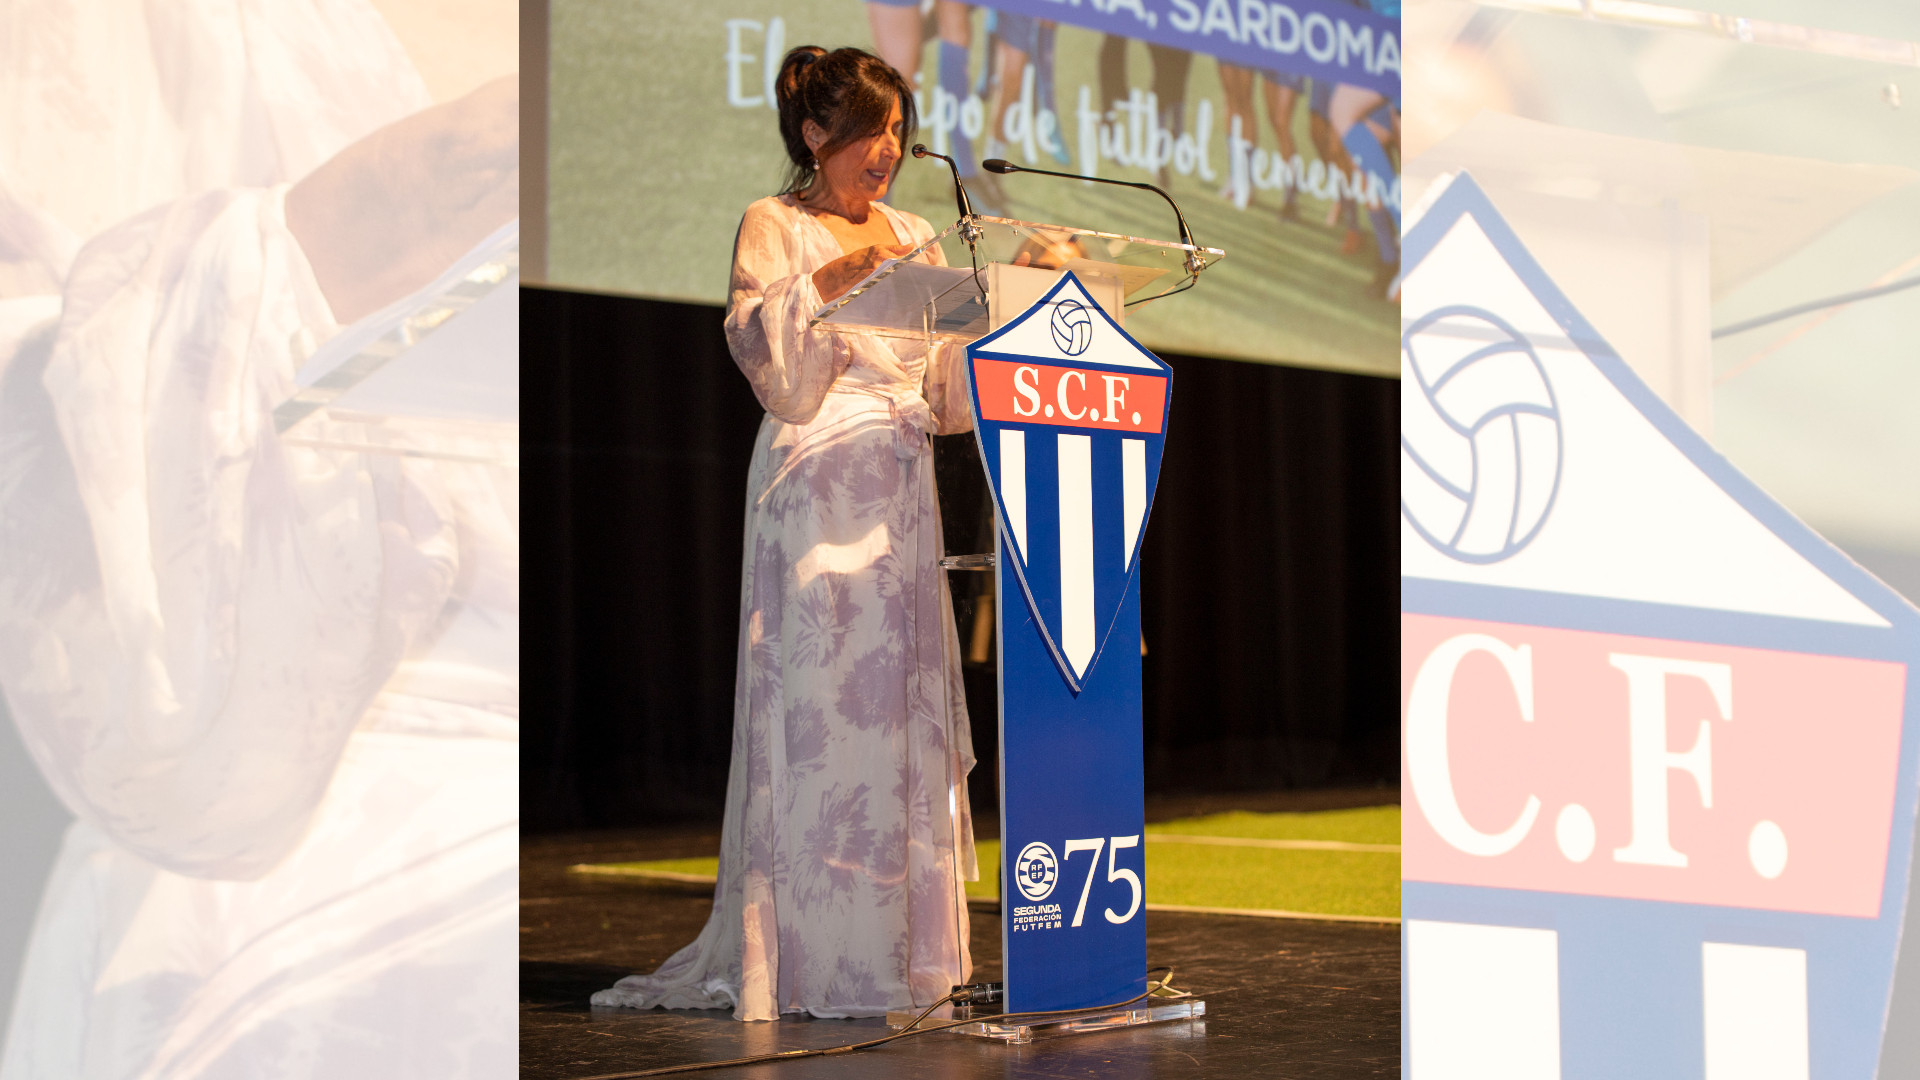 La presidenta del Sárdoma, Begoña Aldao, durante la gala del 75 aniversario. Foto: Cedida